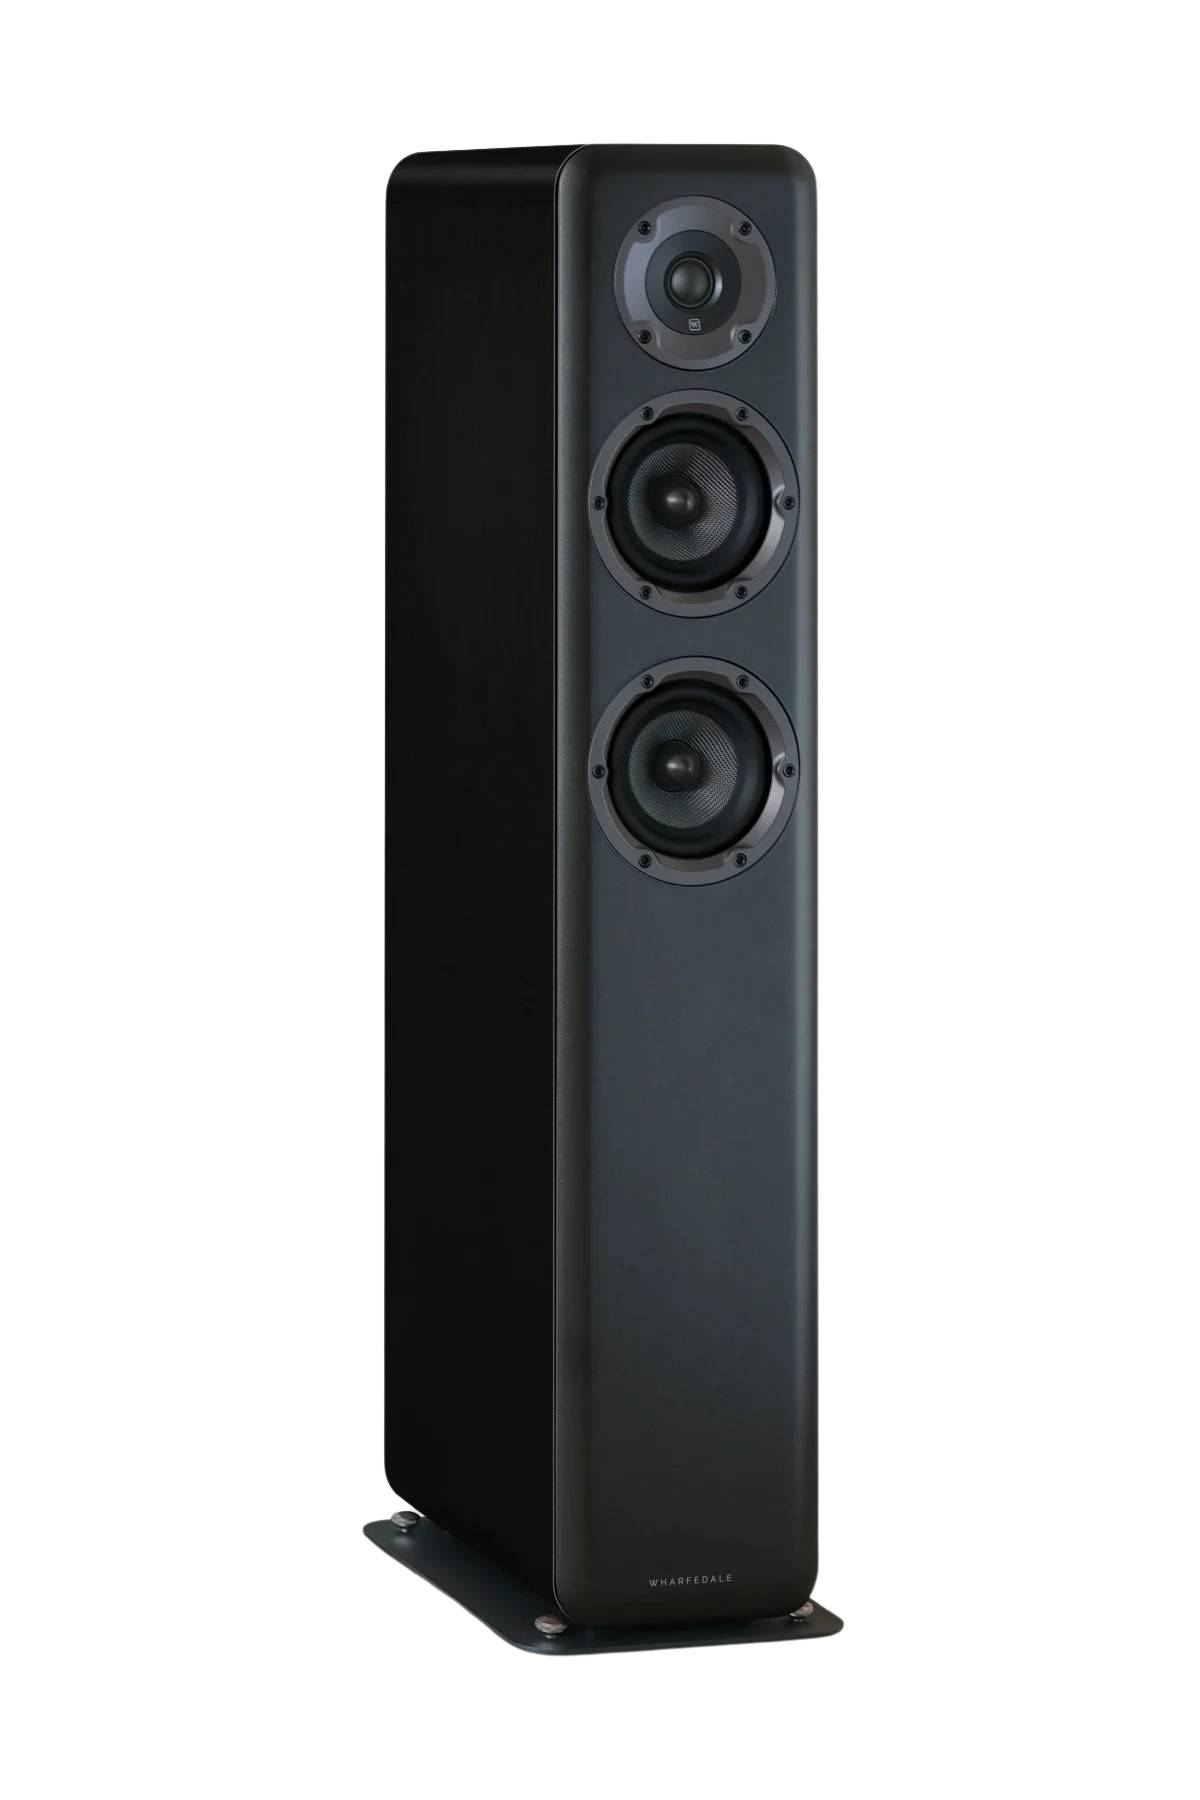 Wharfedale-Wharfedale D330 floorstanding hifi speakers PAIR-PremiumHIFI